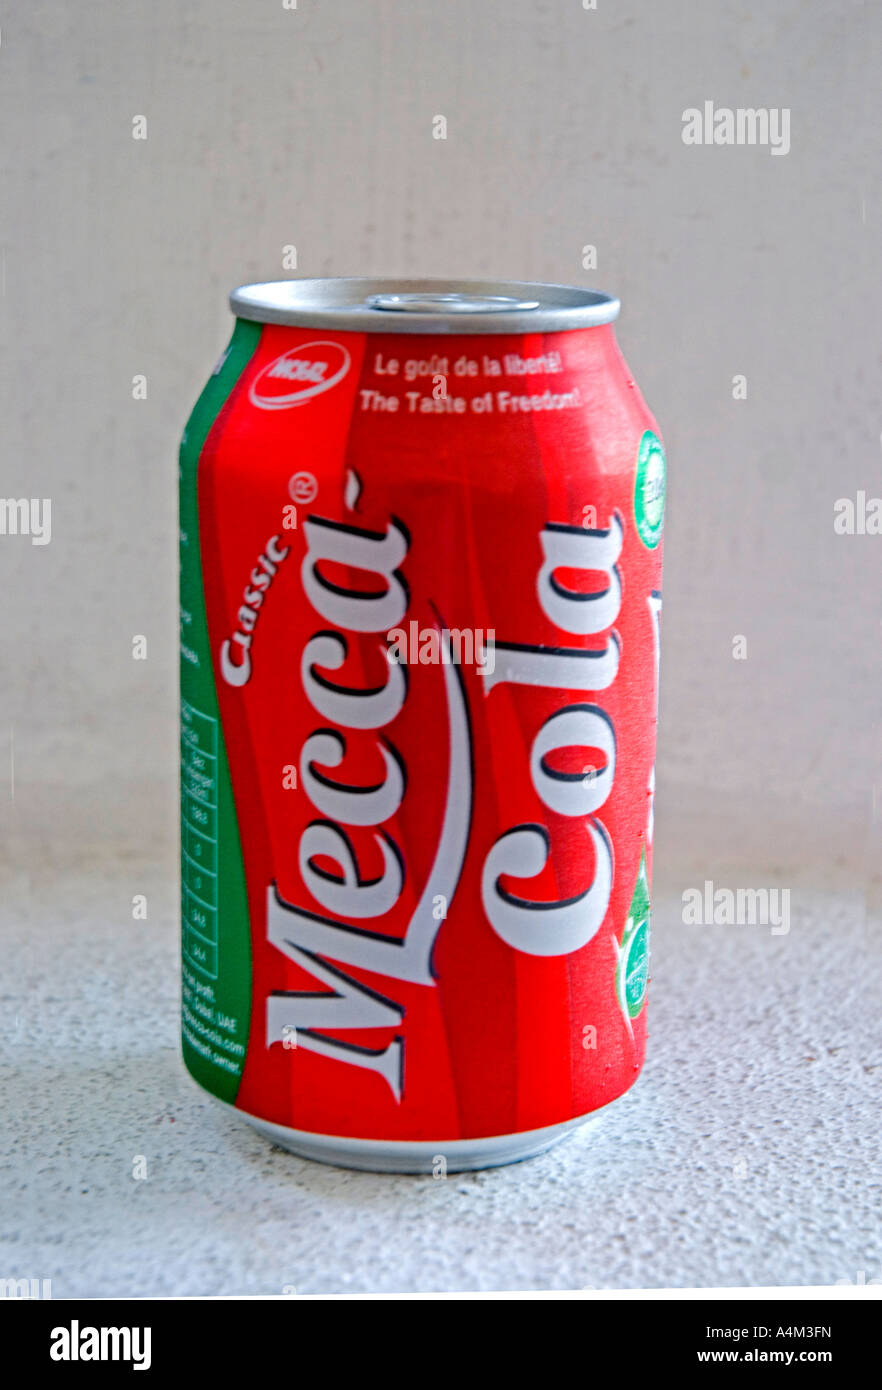 Una lattina di Classic Mecca Cola una copia islamica non autorizzata della Coca Cola tradizionale Foto Stock